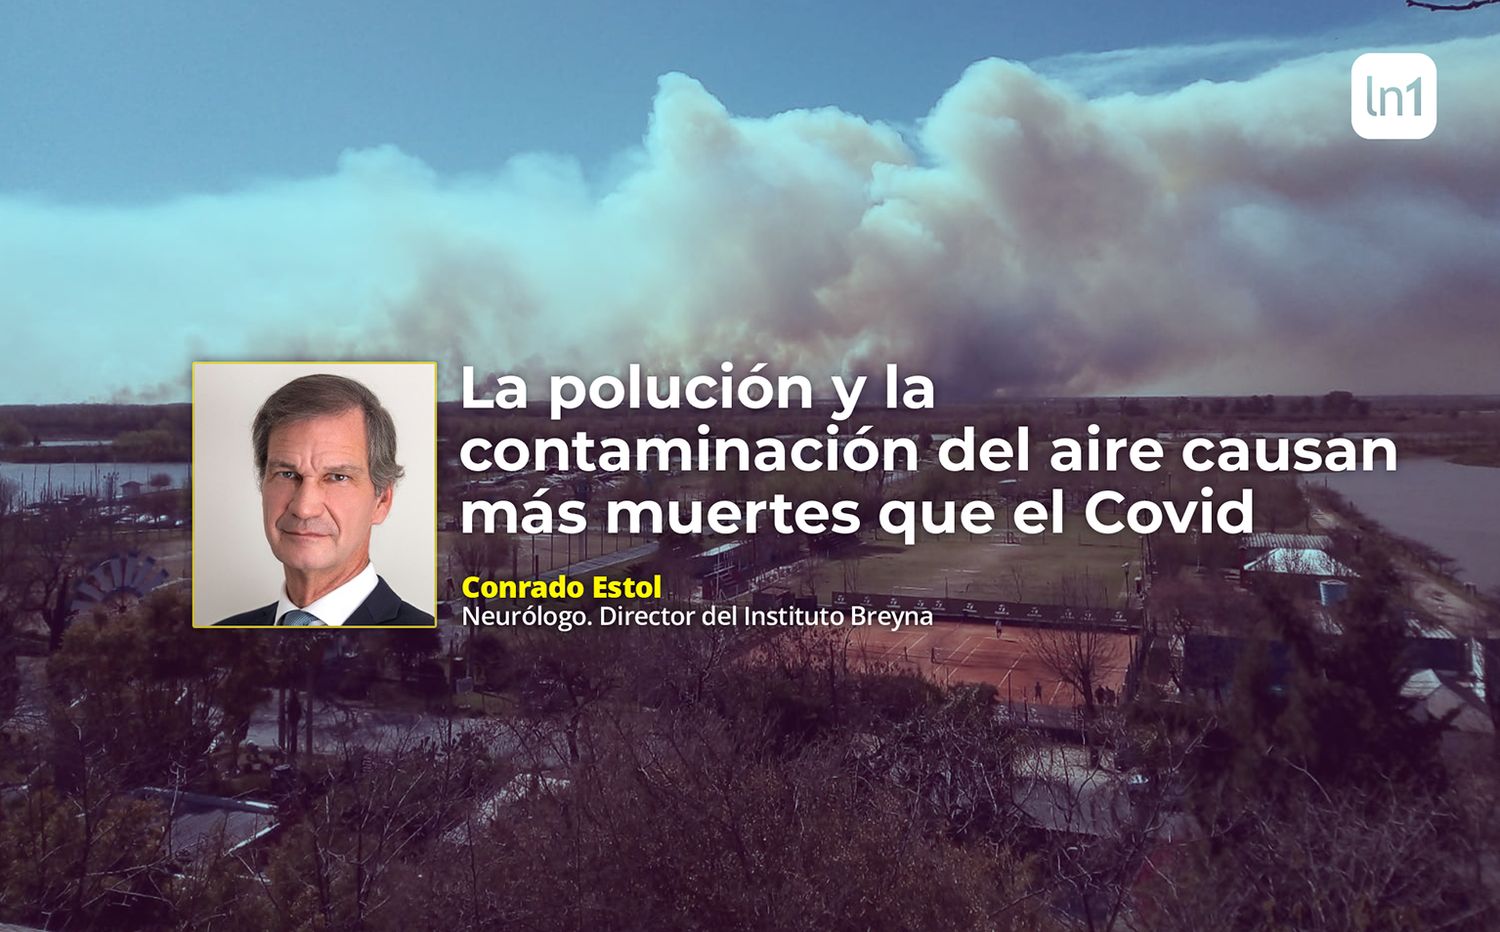 Ecocidio en el Delta: "La polución y la contaminación del aire causan más muertes que el Covid", afirmó Conrado Estol